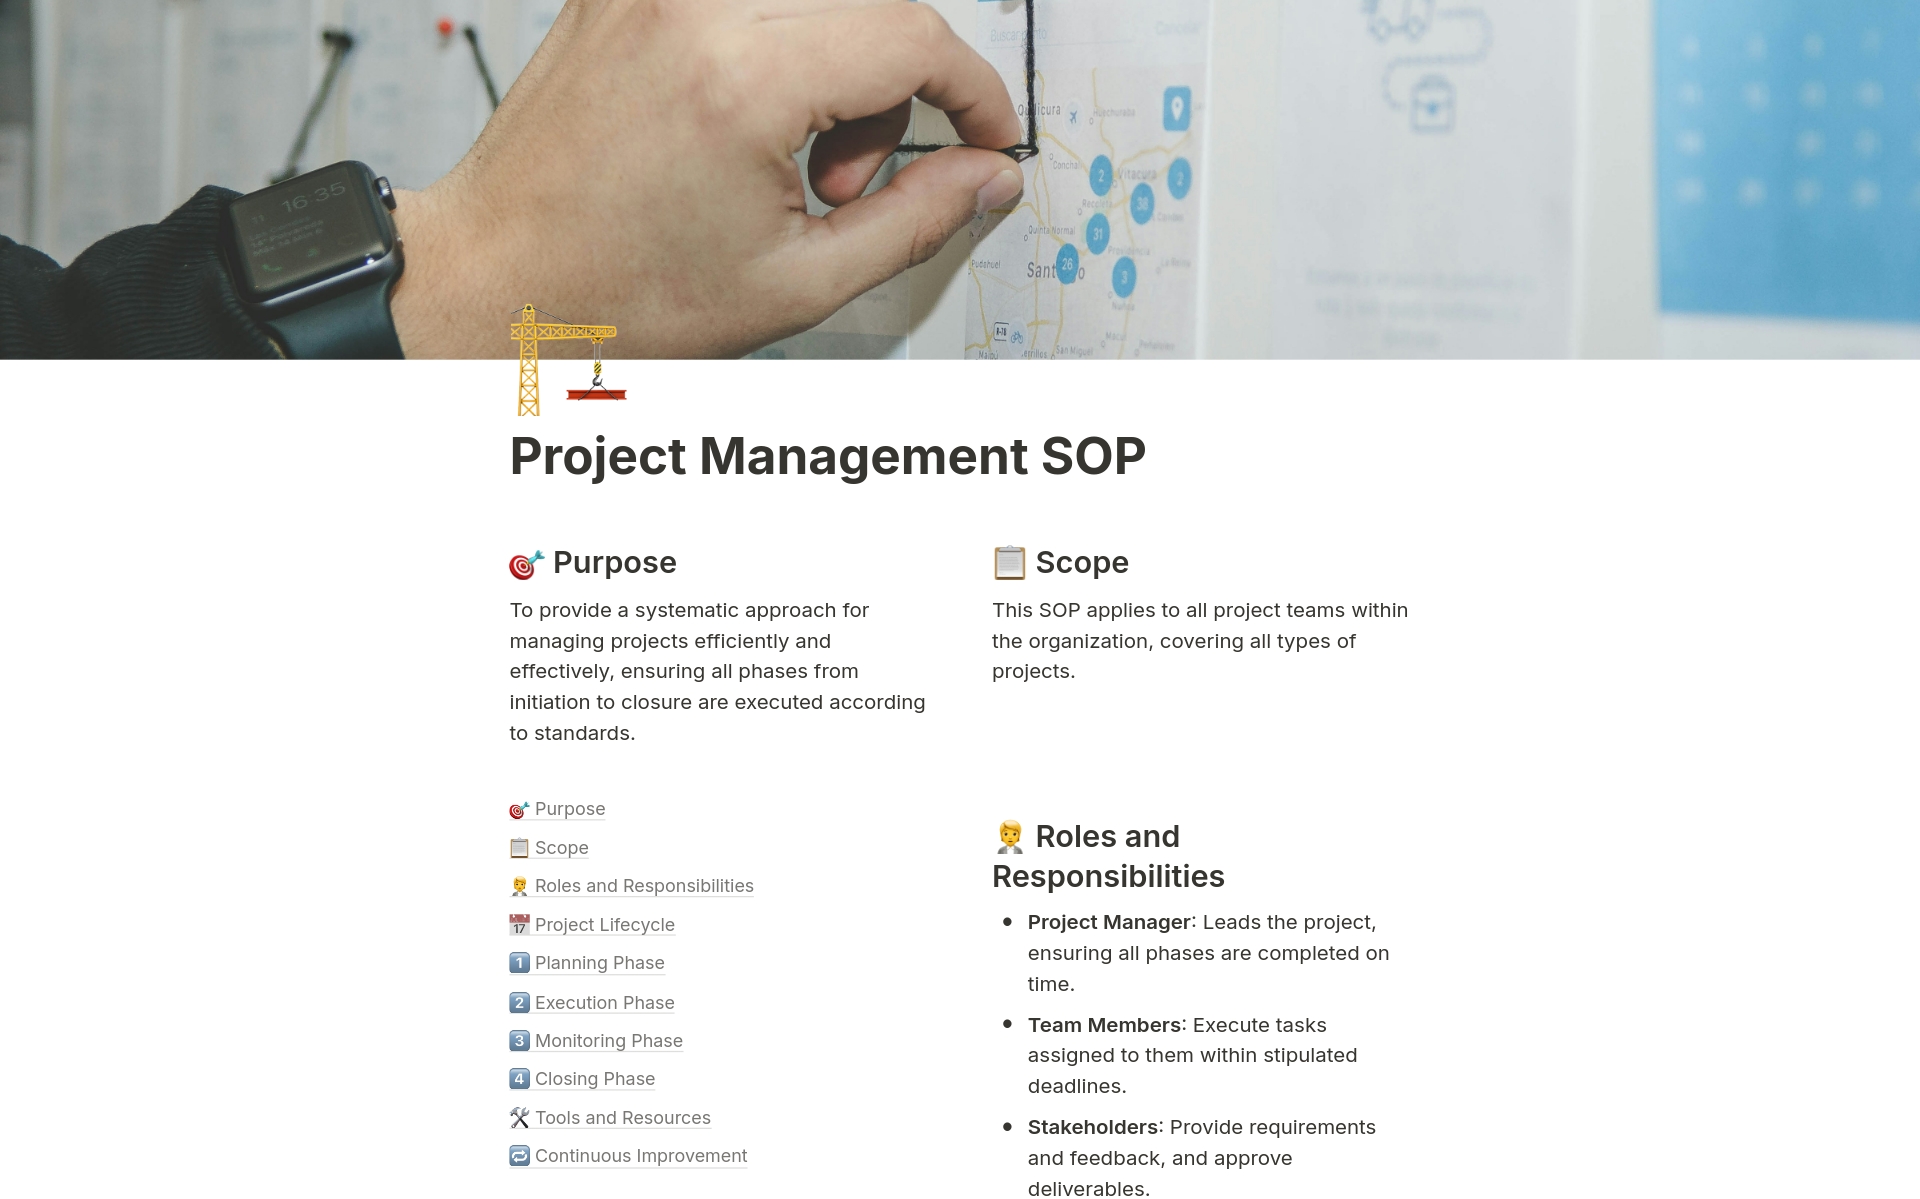 Uma prévia do modelo para Project Management SOP